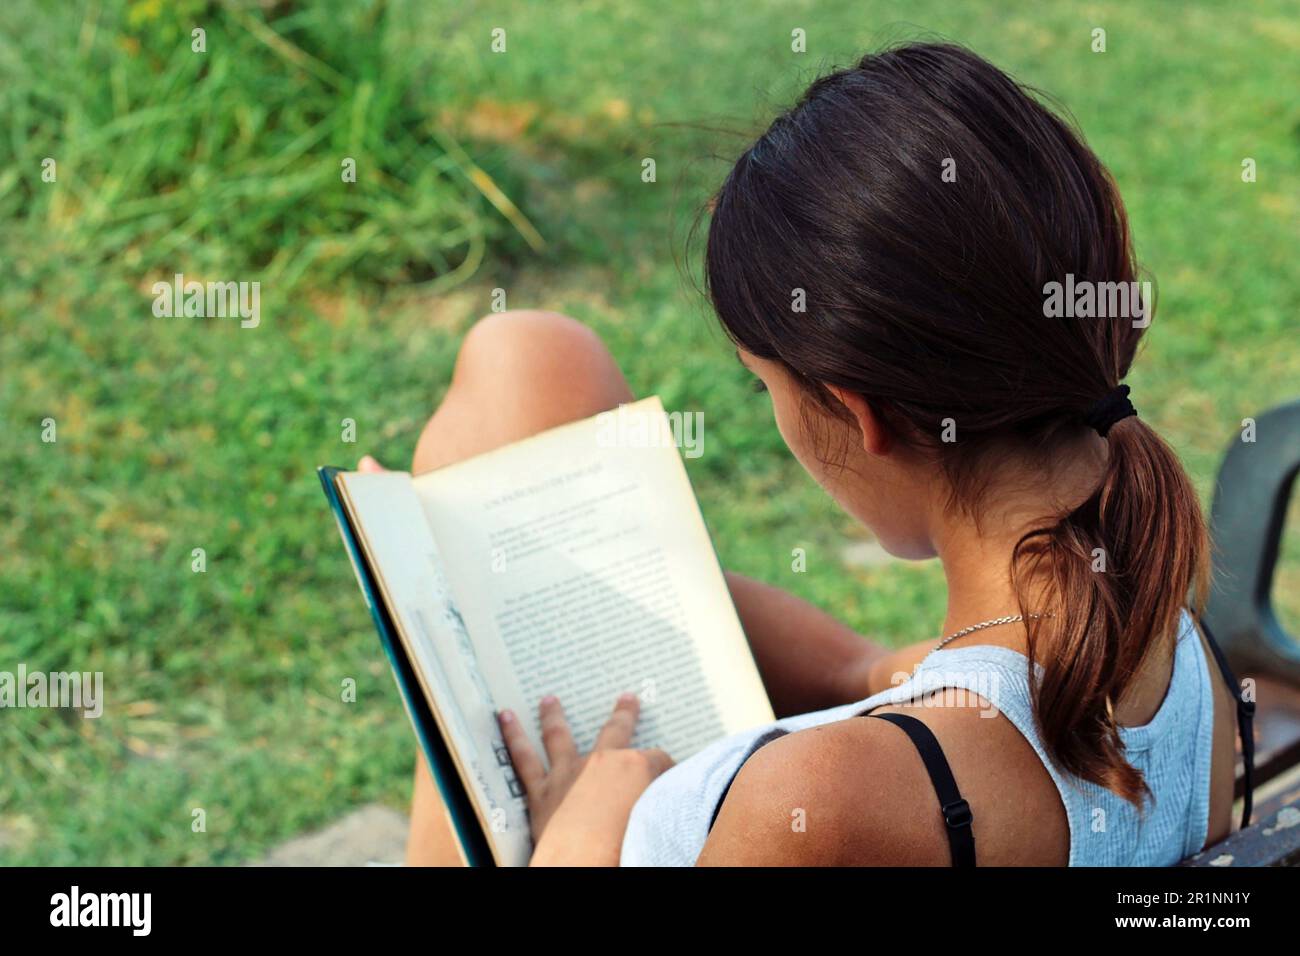 Eine Frau, die auf einer Bank sitzt und im Wald ein Buch liest. Stockfoto